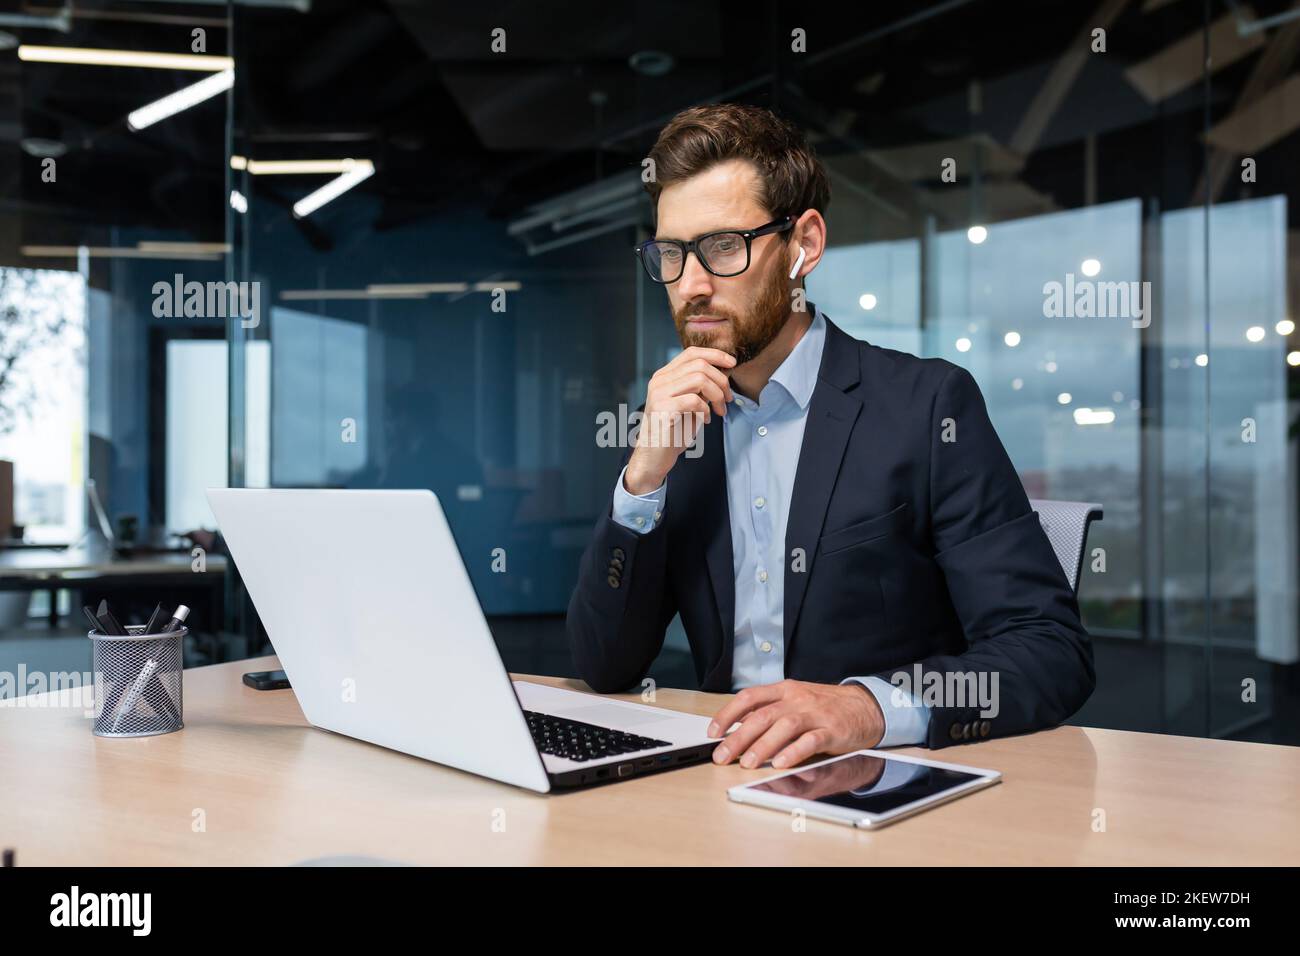 Homme d'affaires senior en lunettes et barbe pense à une décision, l'homme travaille à l'intérieur du bureau et utilise un ordinateur portable au travail, l'investisseur mature dans une combinaison d'affaires est assis à la table Banque D'Images